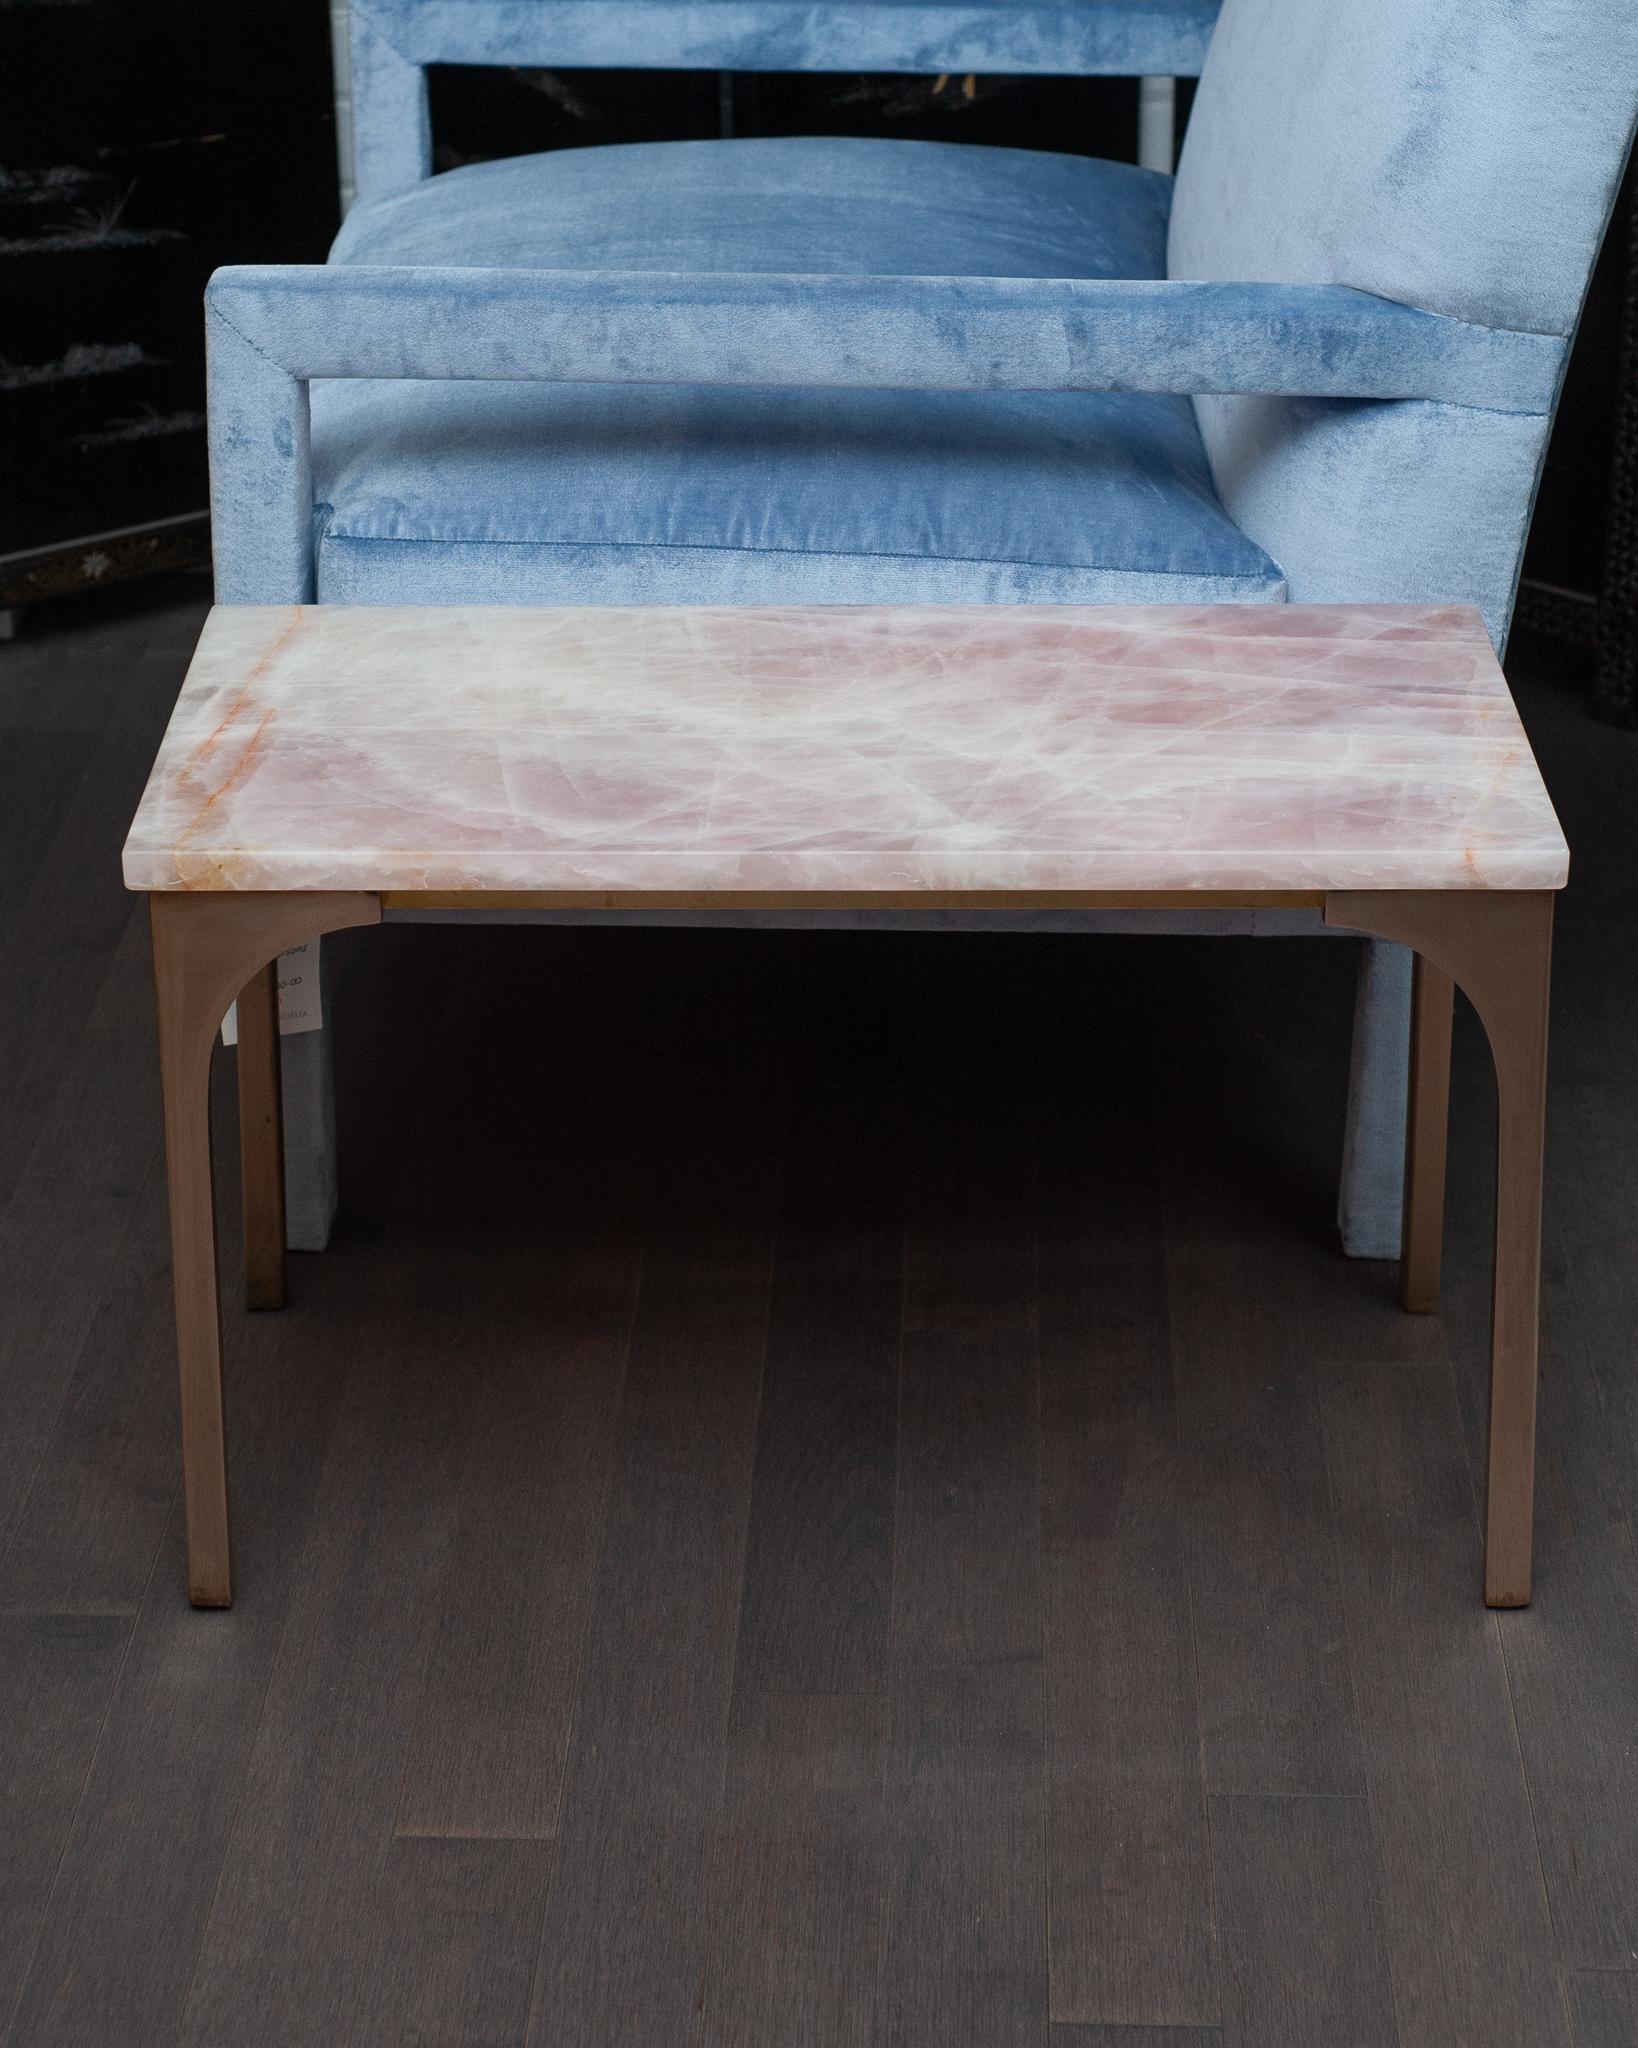 Une superbe table du Studio Maison Nurita en quartz rose et bronze. Fabriquée à partir d'une dalle solide de quartz rose de la plus haute qualité provenant du Brésil, cette table est dotée de pieds en bronze coulé massif de couleur or rose poli. Le